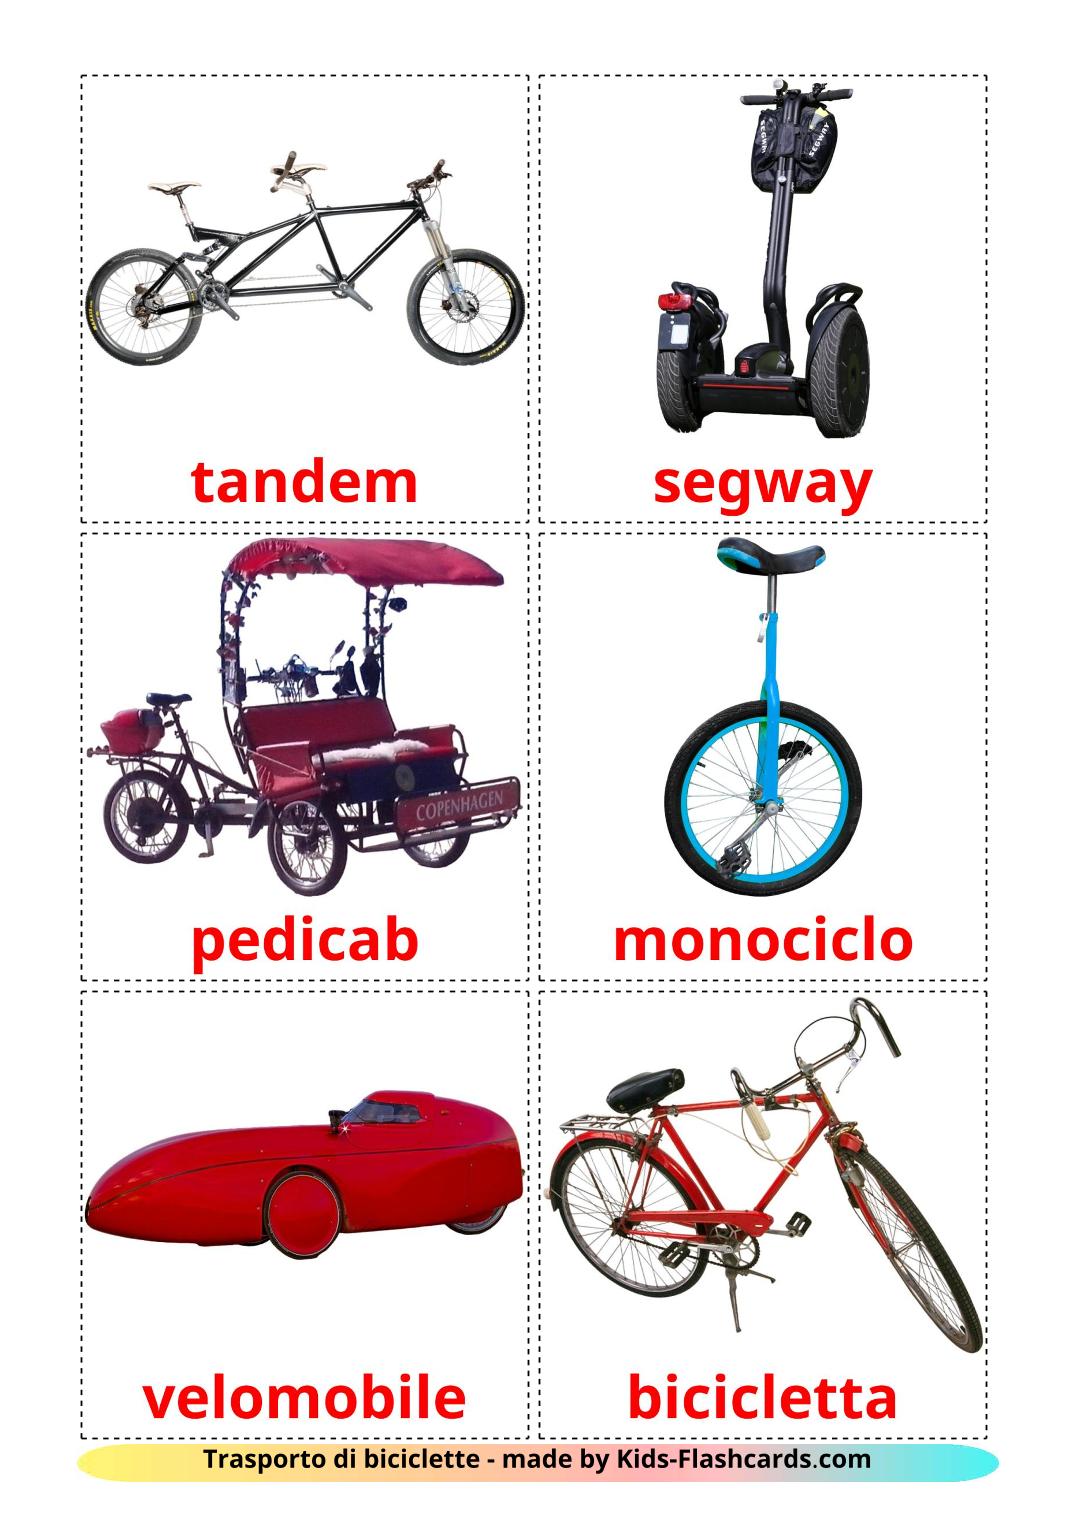 Transporte de Bicicleta - 16 Flashcards italianoes gratuitos para impressão